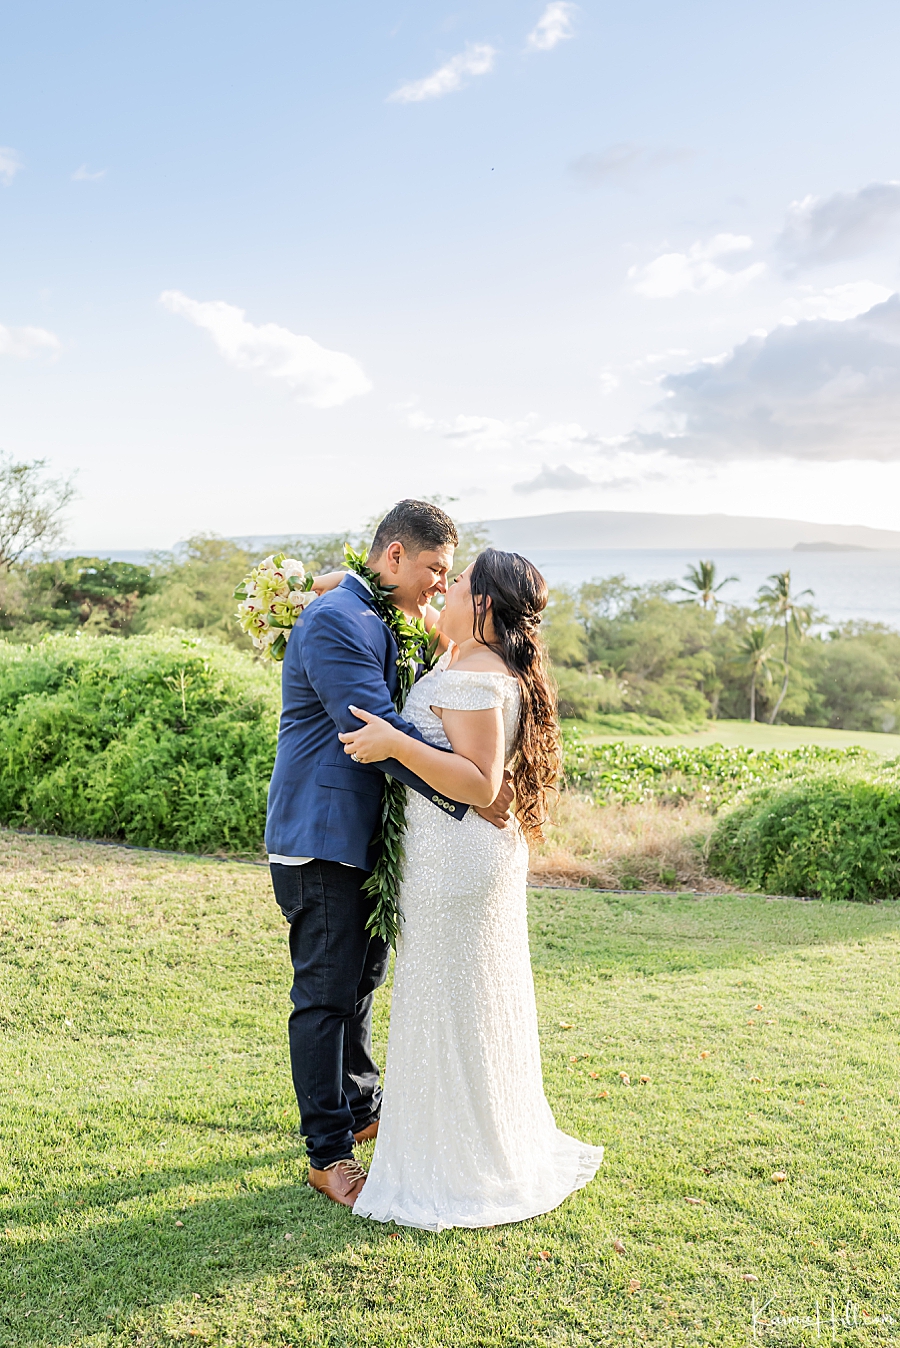 Gannons wedding Maui Hawaii